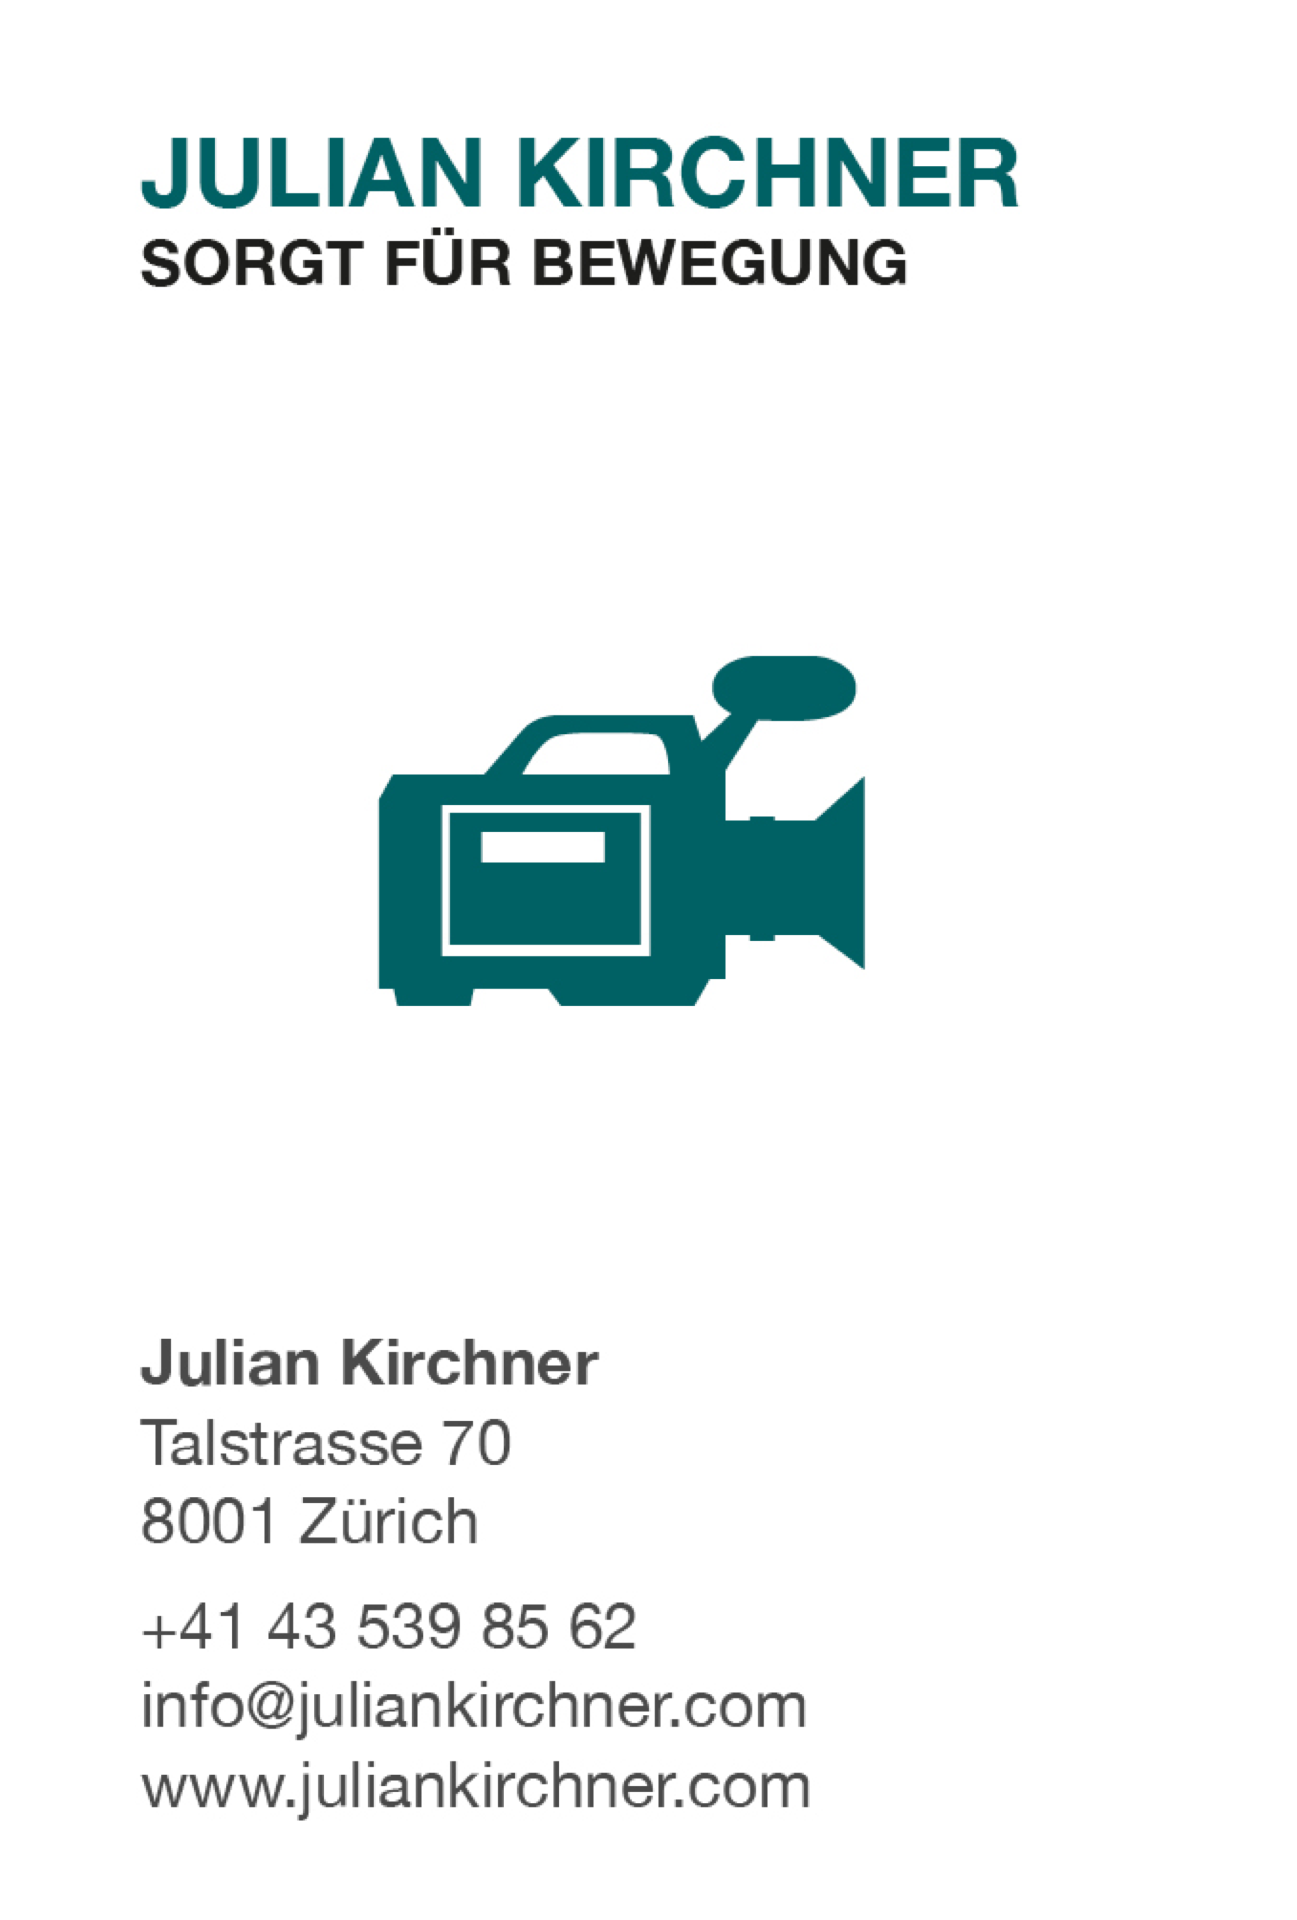 Abbildung: Visitenkartengestaltung für Julian Kirchner - leidenschaftlicher Videoproduzent.